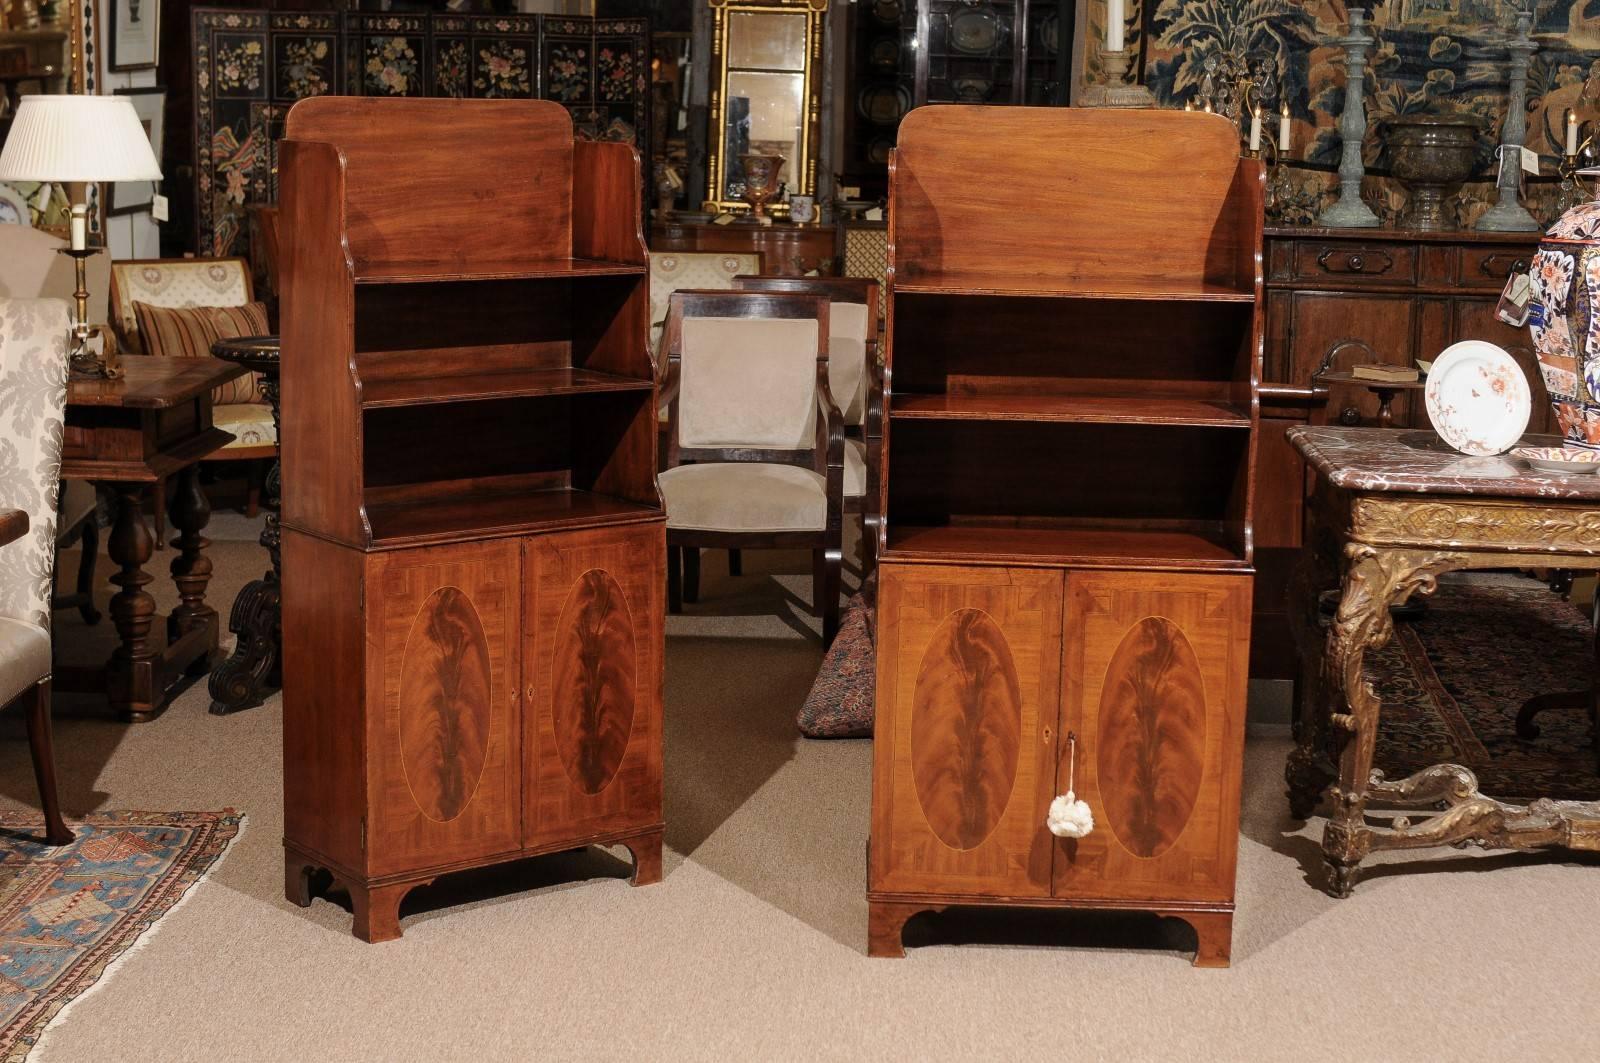 Une paire de bibliothèques en acajou de style Régence anglaise du 19e siècle avec des portes d'armoires inférieures incrustées et des pieds en console.